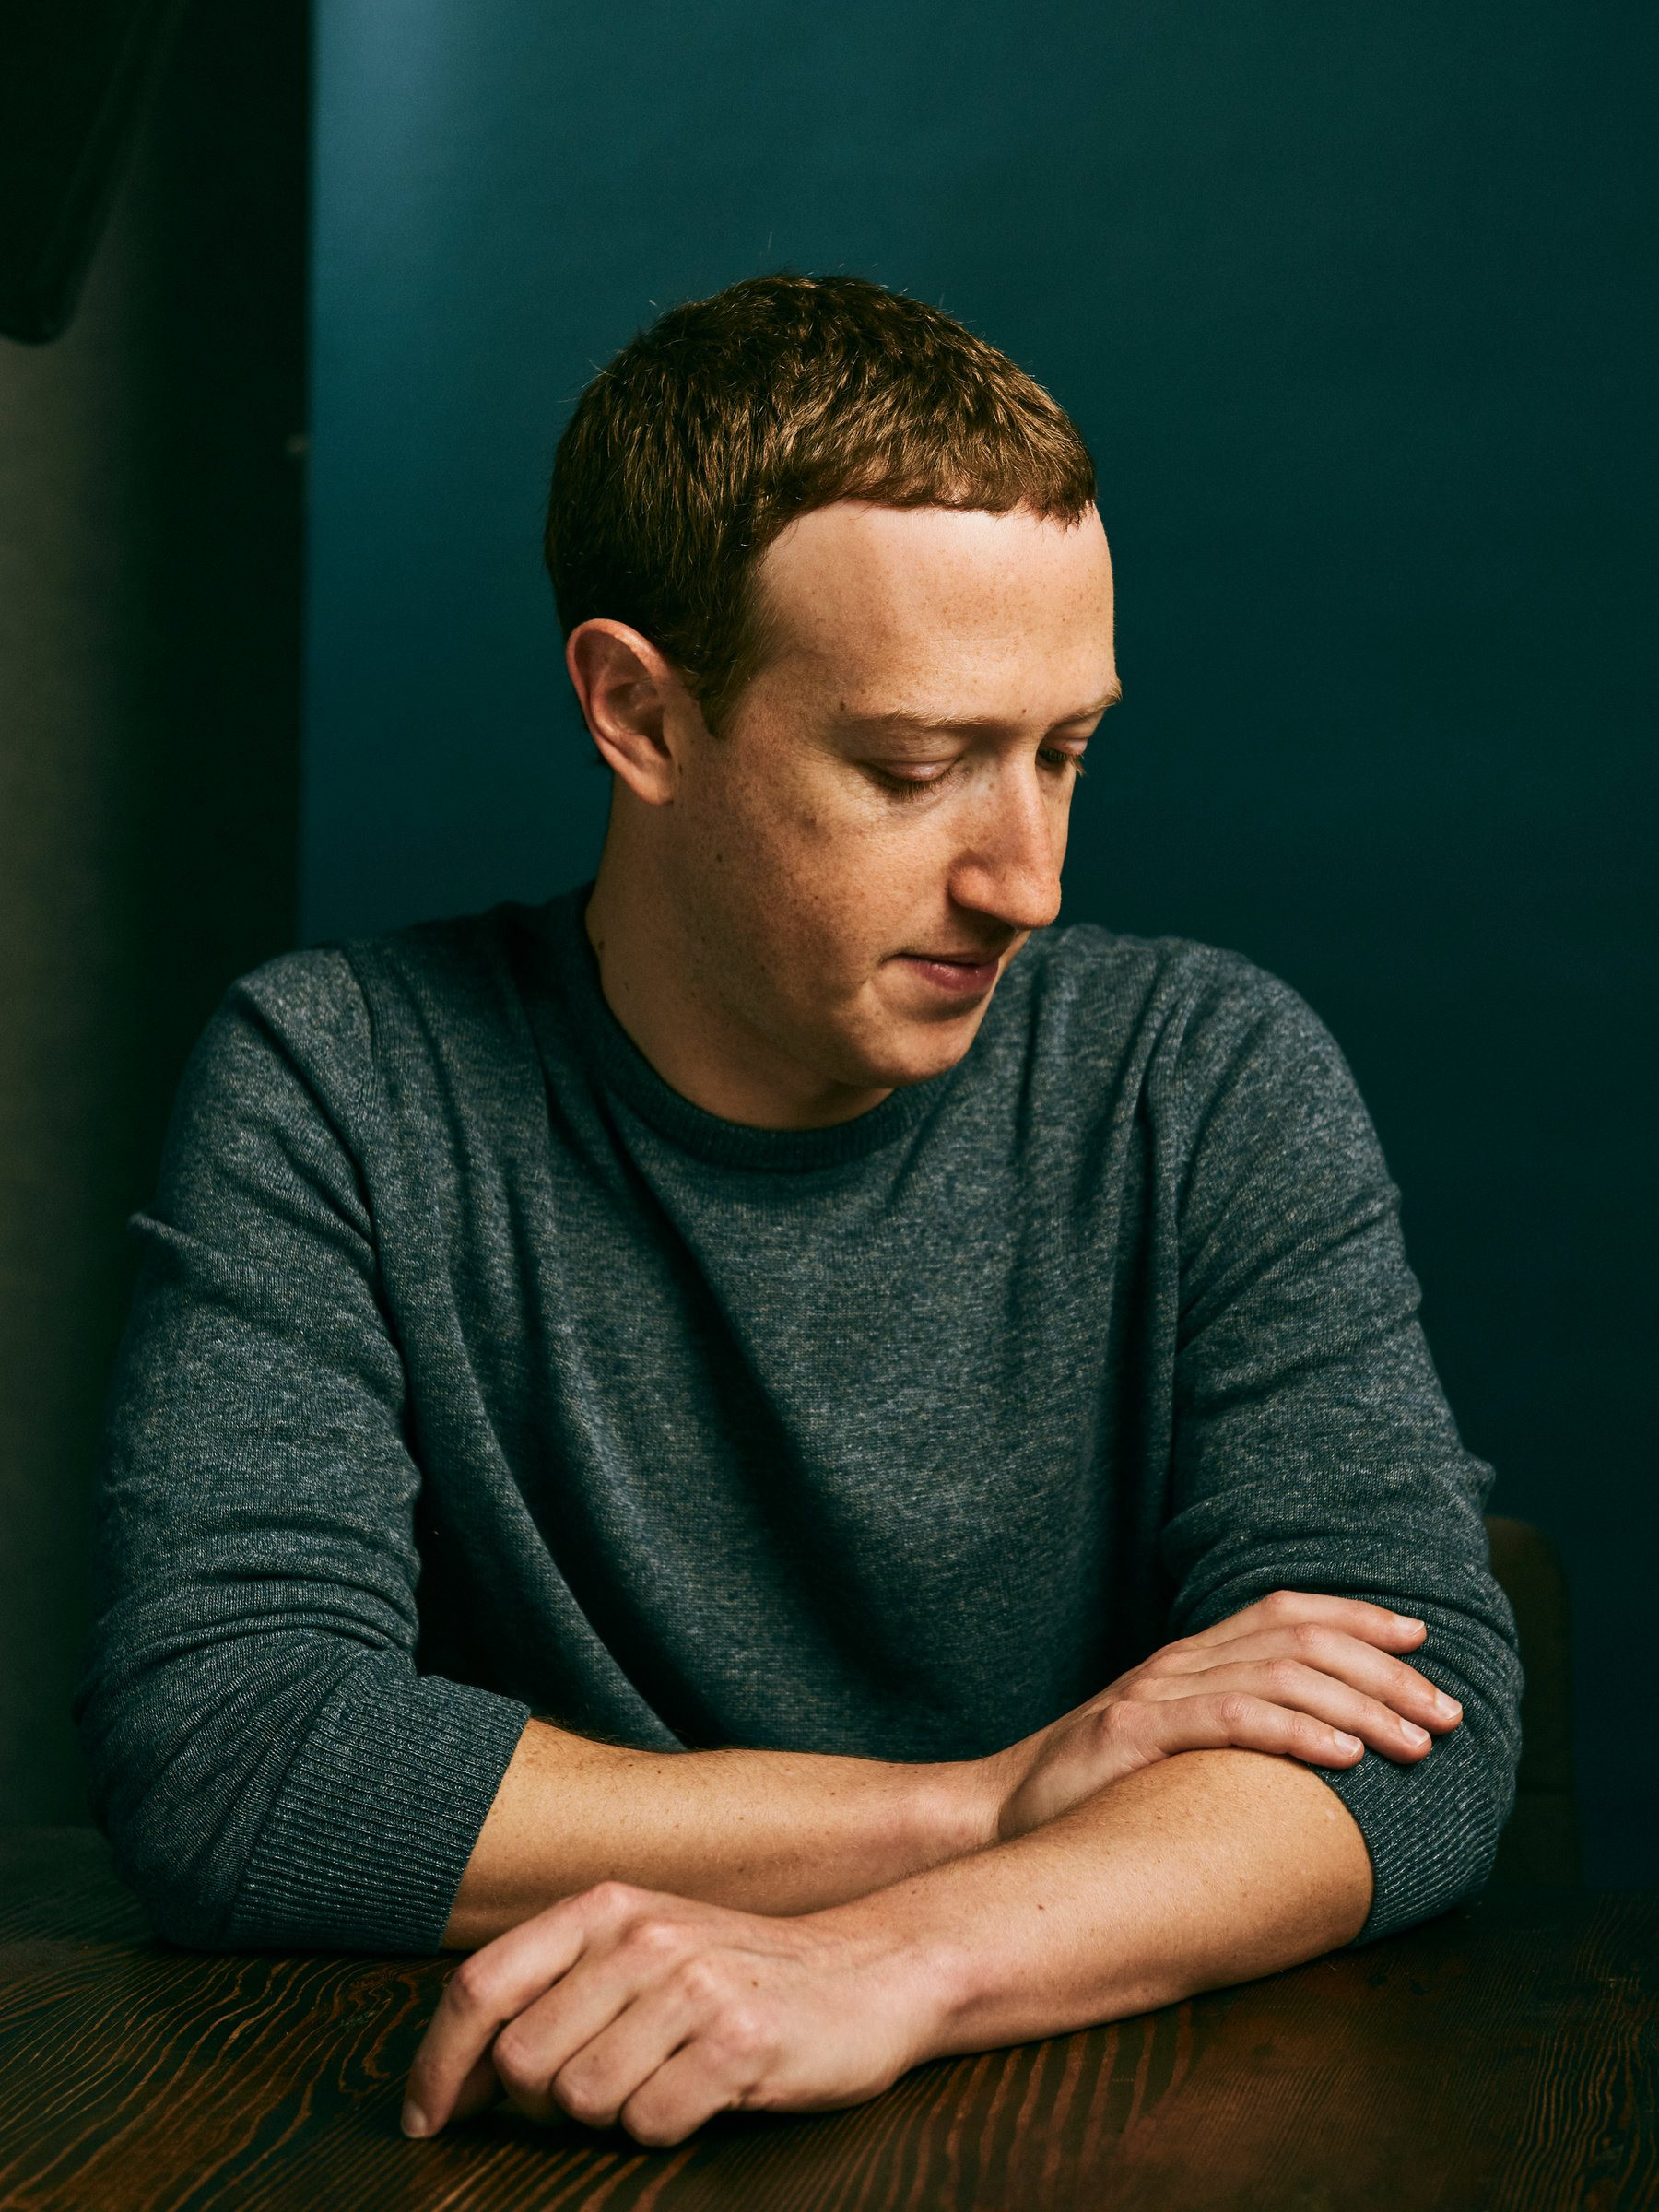 Cơn đau đầu của Mark Zuckerberg: Hơn 1 năm làm vũ trụ ảo, Meta vẫn sống nhờ vào quảng cáo, Reality Labs 'đốt' gần 14 tỷ USD mà không mang lại kết quả gì - Ảnh 1.